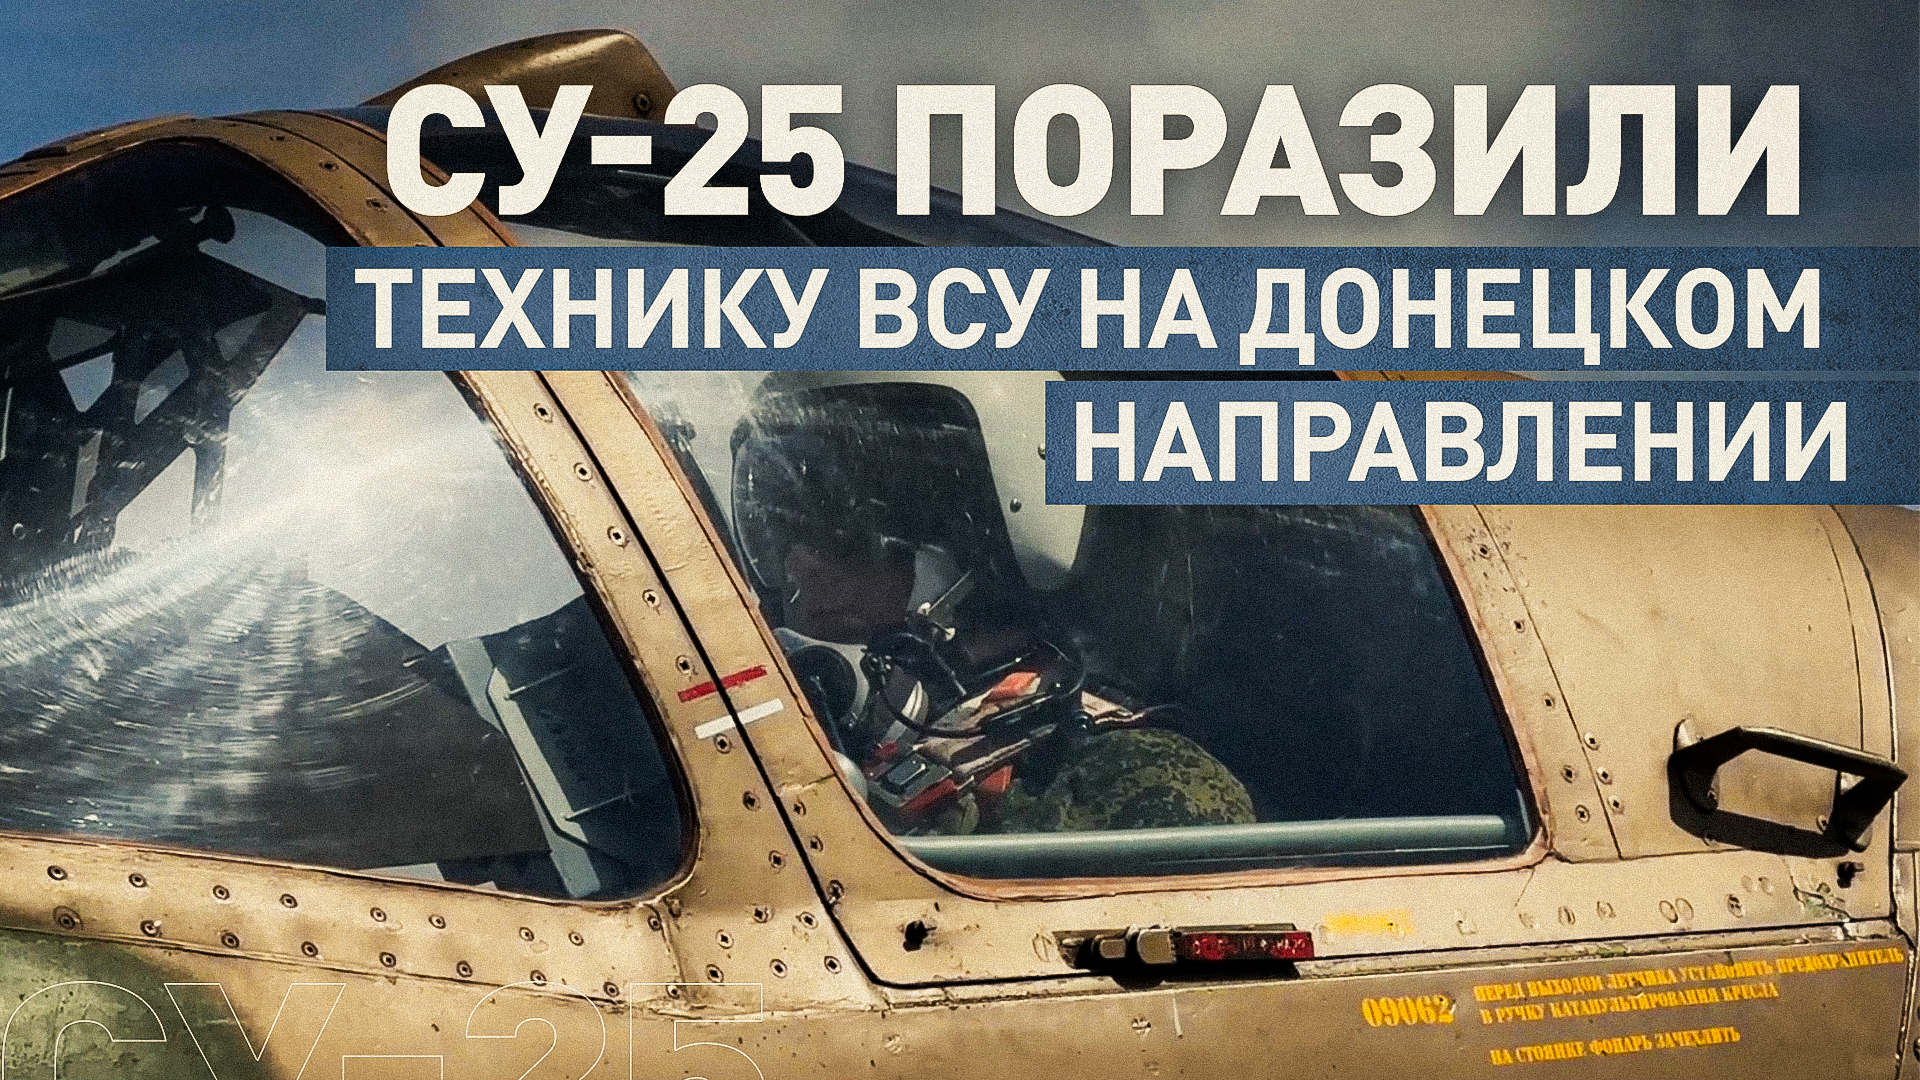 Все цели поражены: экипажи Су-25 ВКС России нанесли удар по технике ВСУ на Донецком направлении